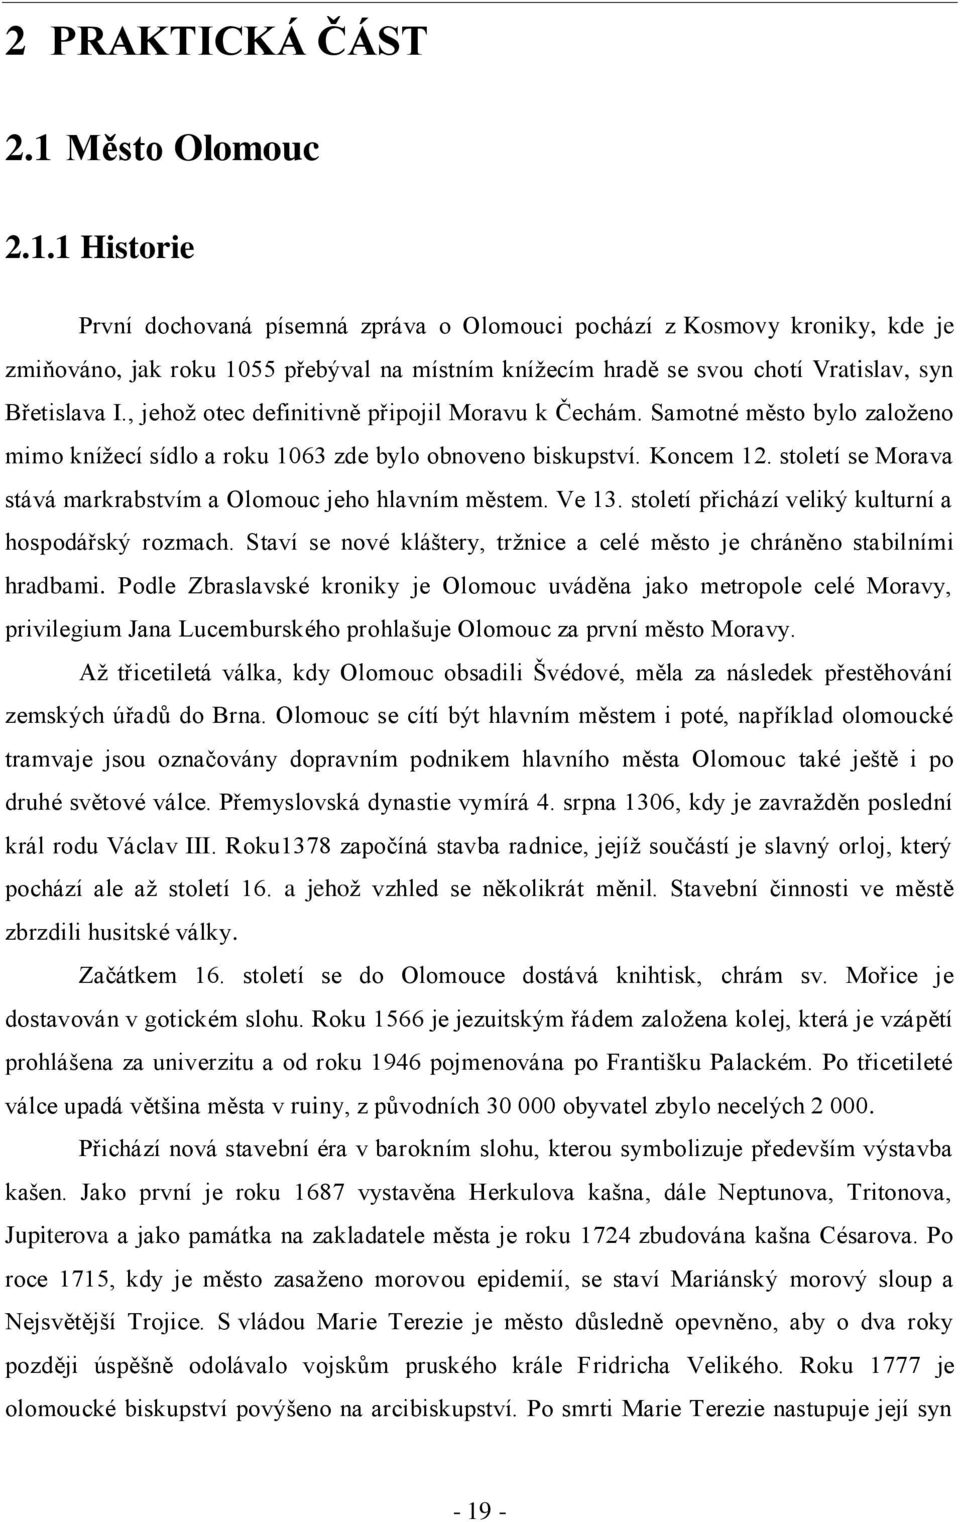 1 Historie První dochovaná písemná zpráva o Olomouci pochází z Kosmovy kroniky, kde je zmiňováno, jak roku 1055 přebýval na místním kníţecím hradě se svou chotí Vratislav, syn Břetislava I.